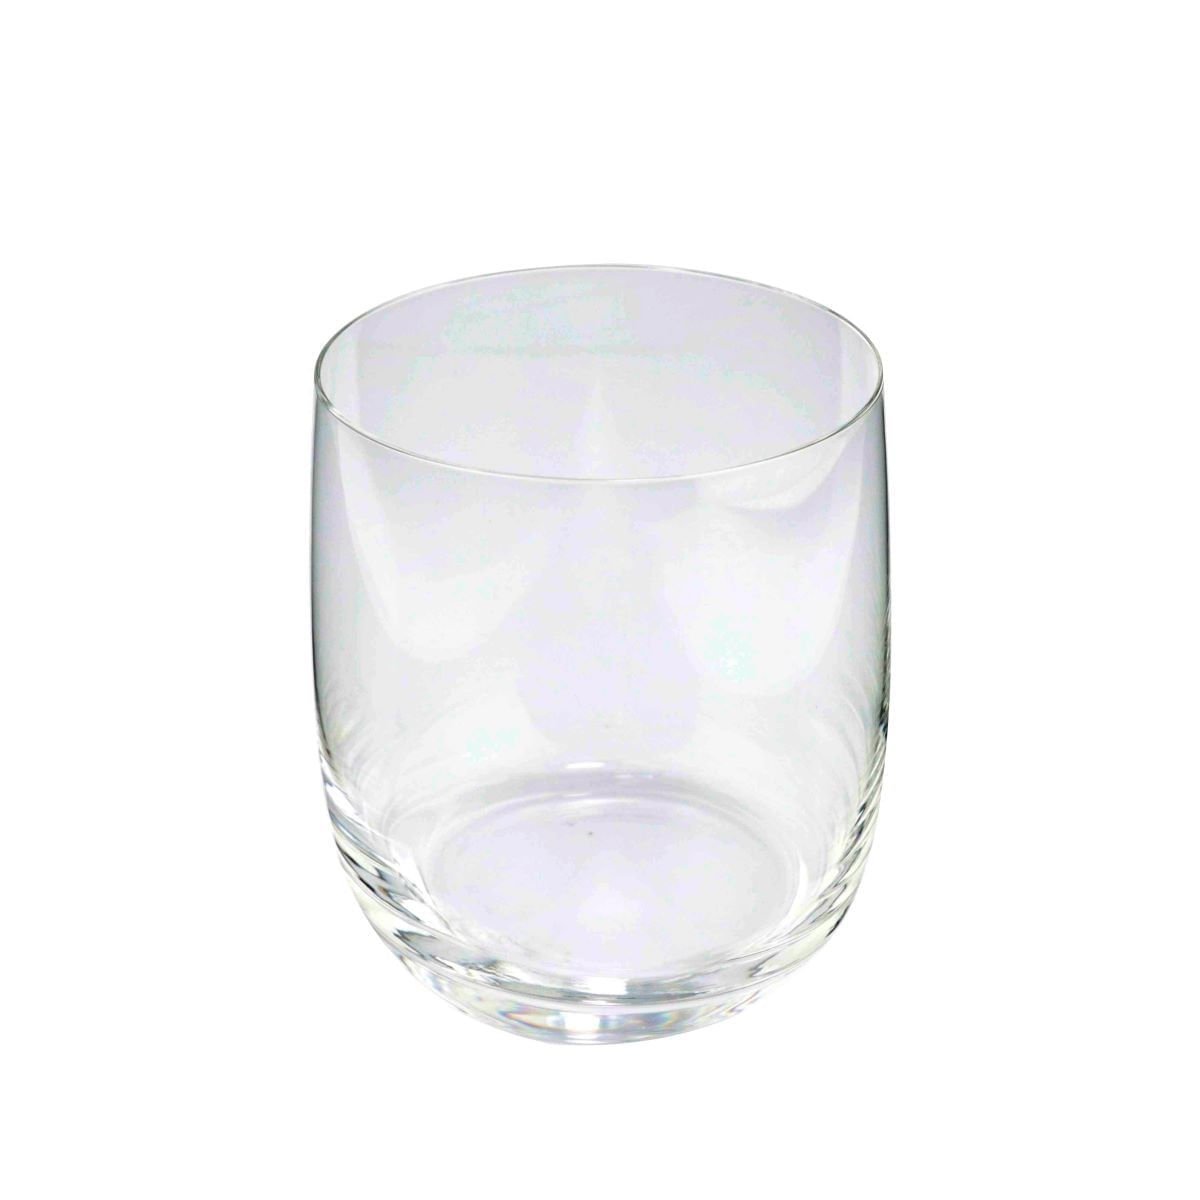 Jogo 6 Copos Baixos de Cristal - De Whisky, Água, Suco 390ml Full Fit - 2